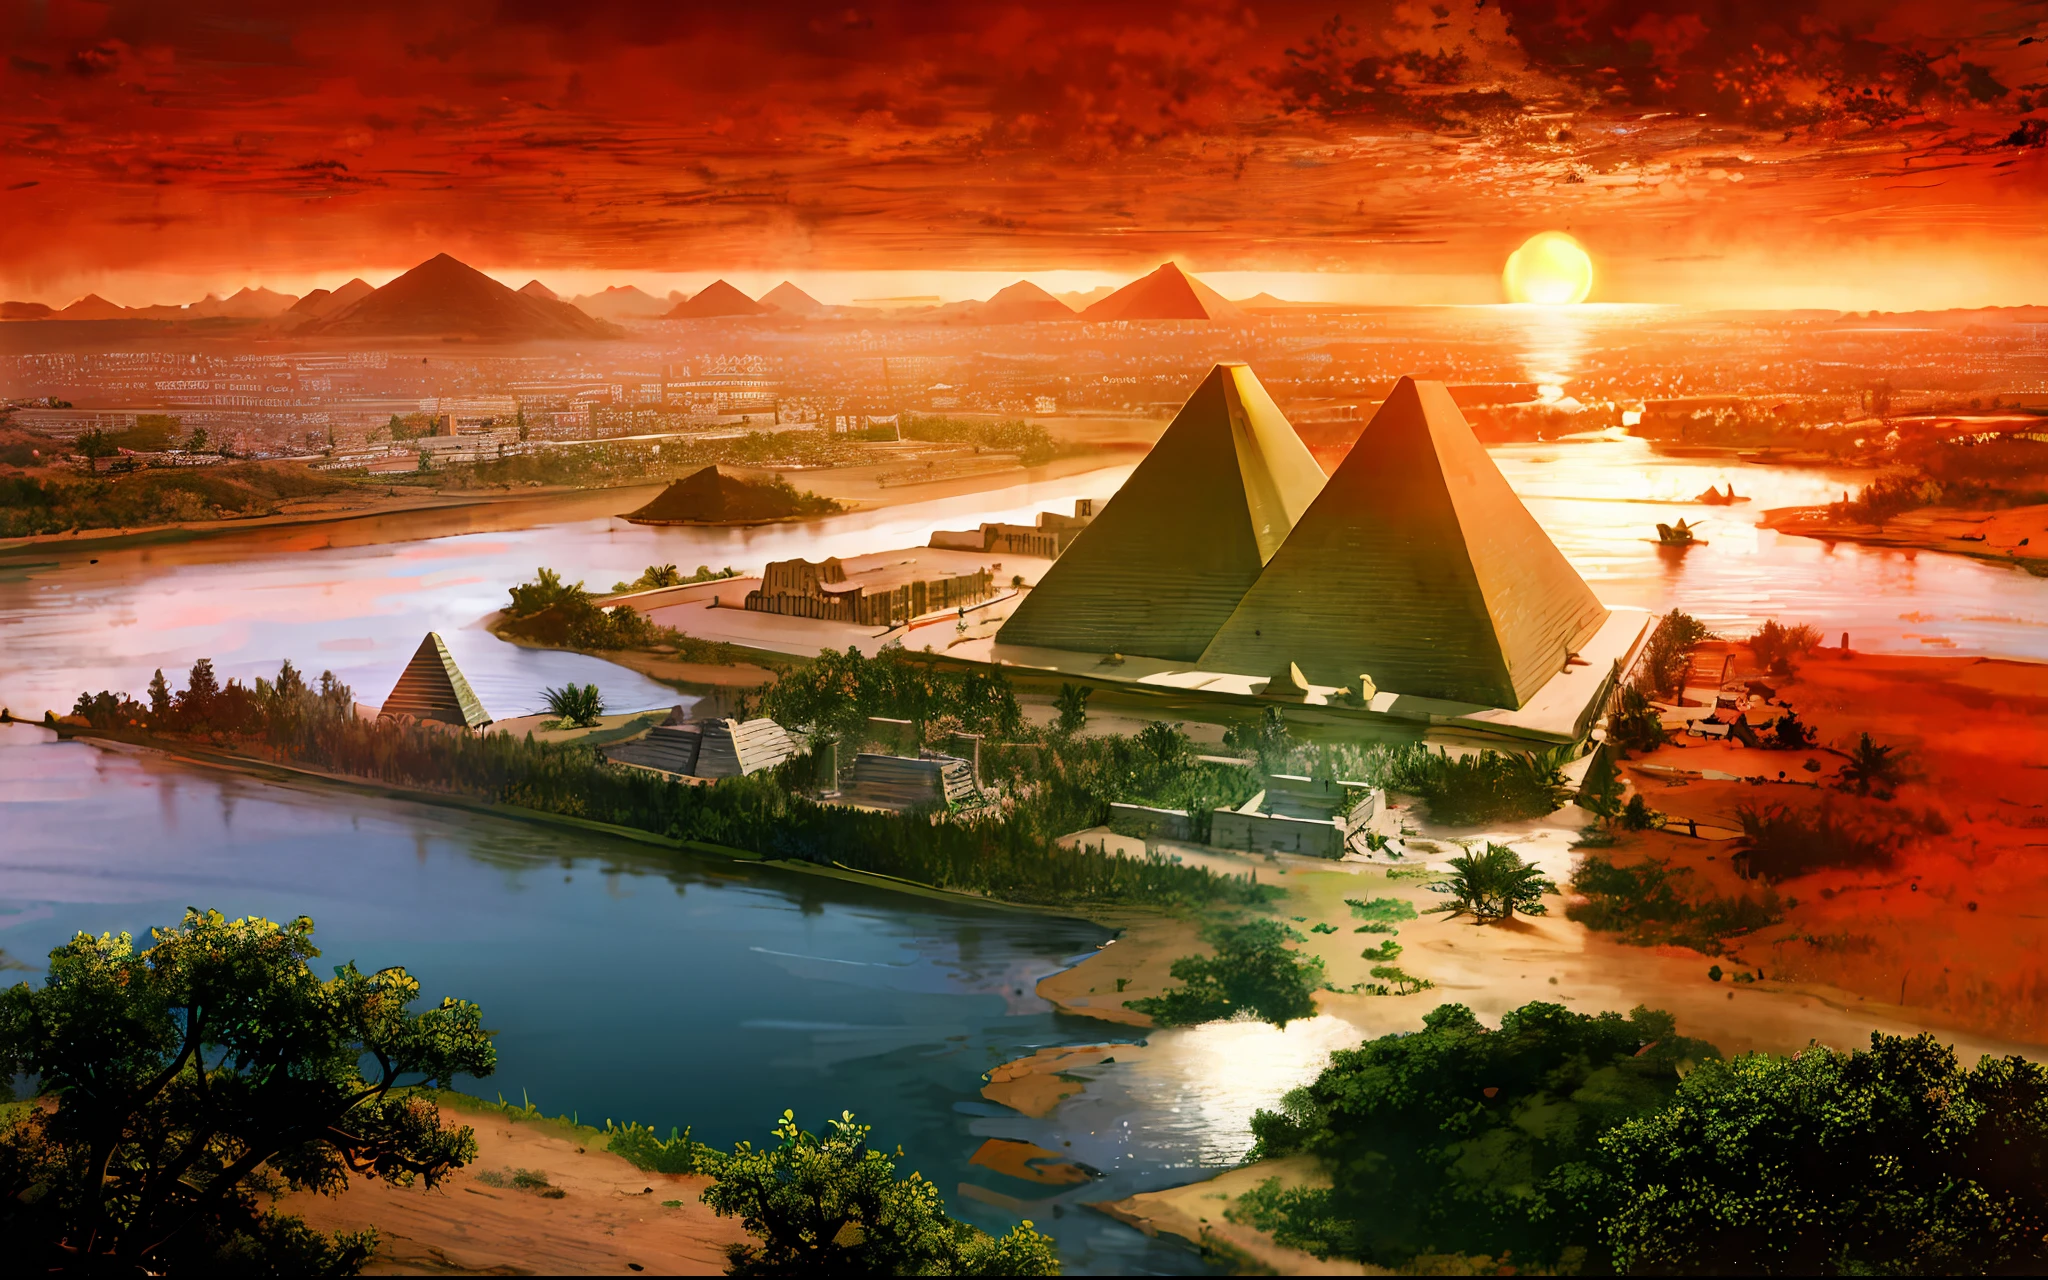 고대 이집트 문명，와이드 와이드 샷，나일 강，피라미드，지는 해，강은 수평선까지 뻗어있다，서사적 감각，웅장함